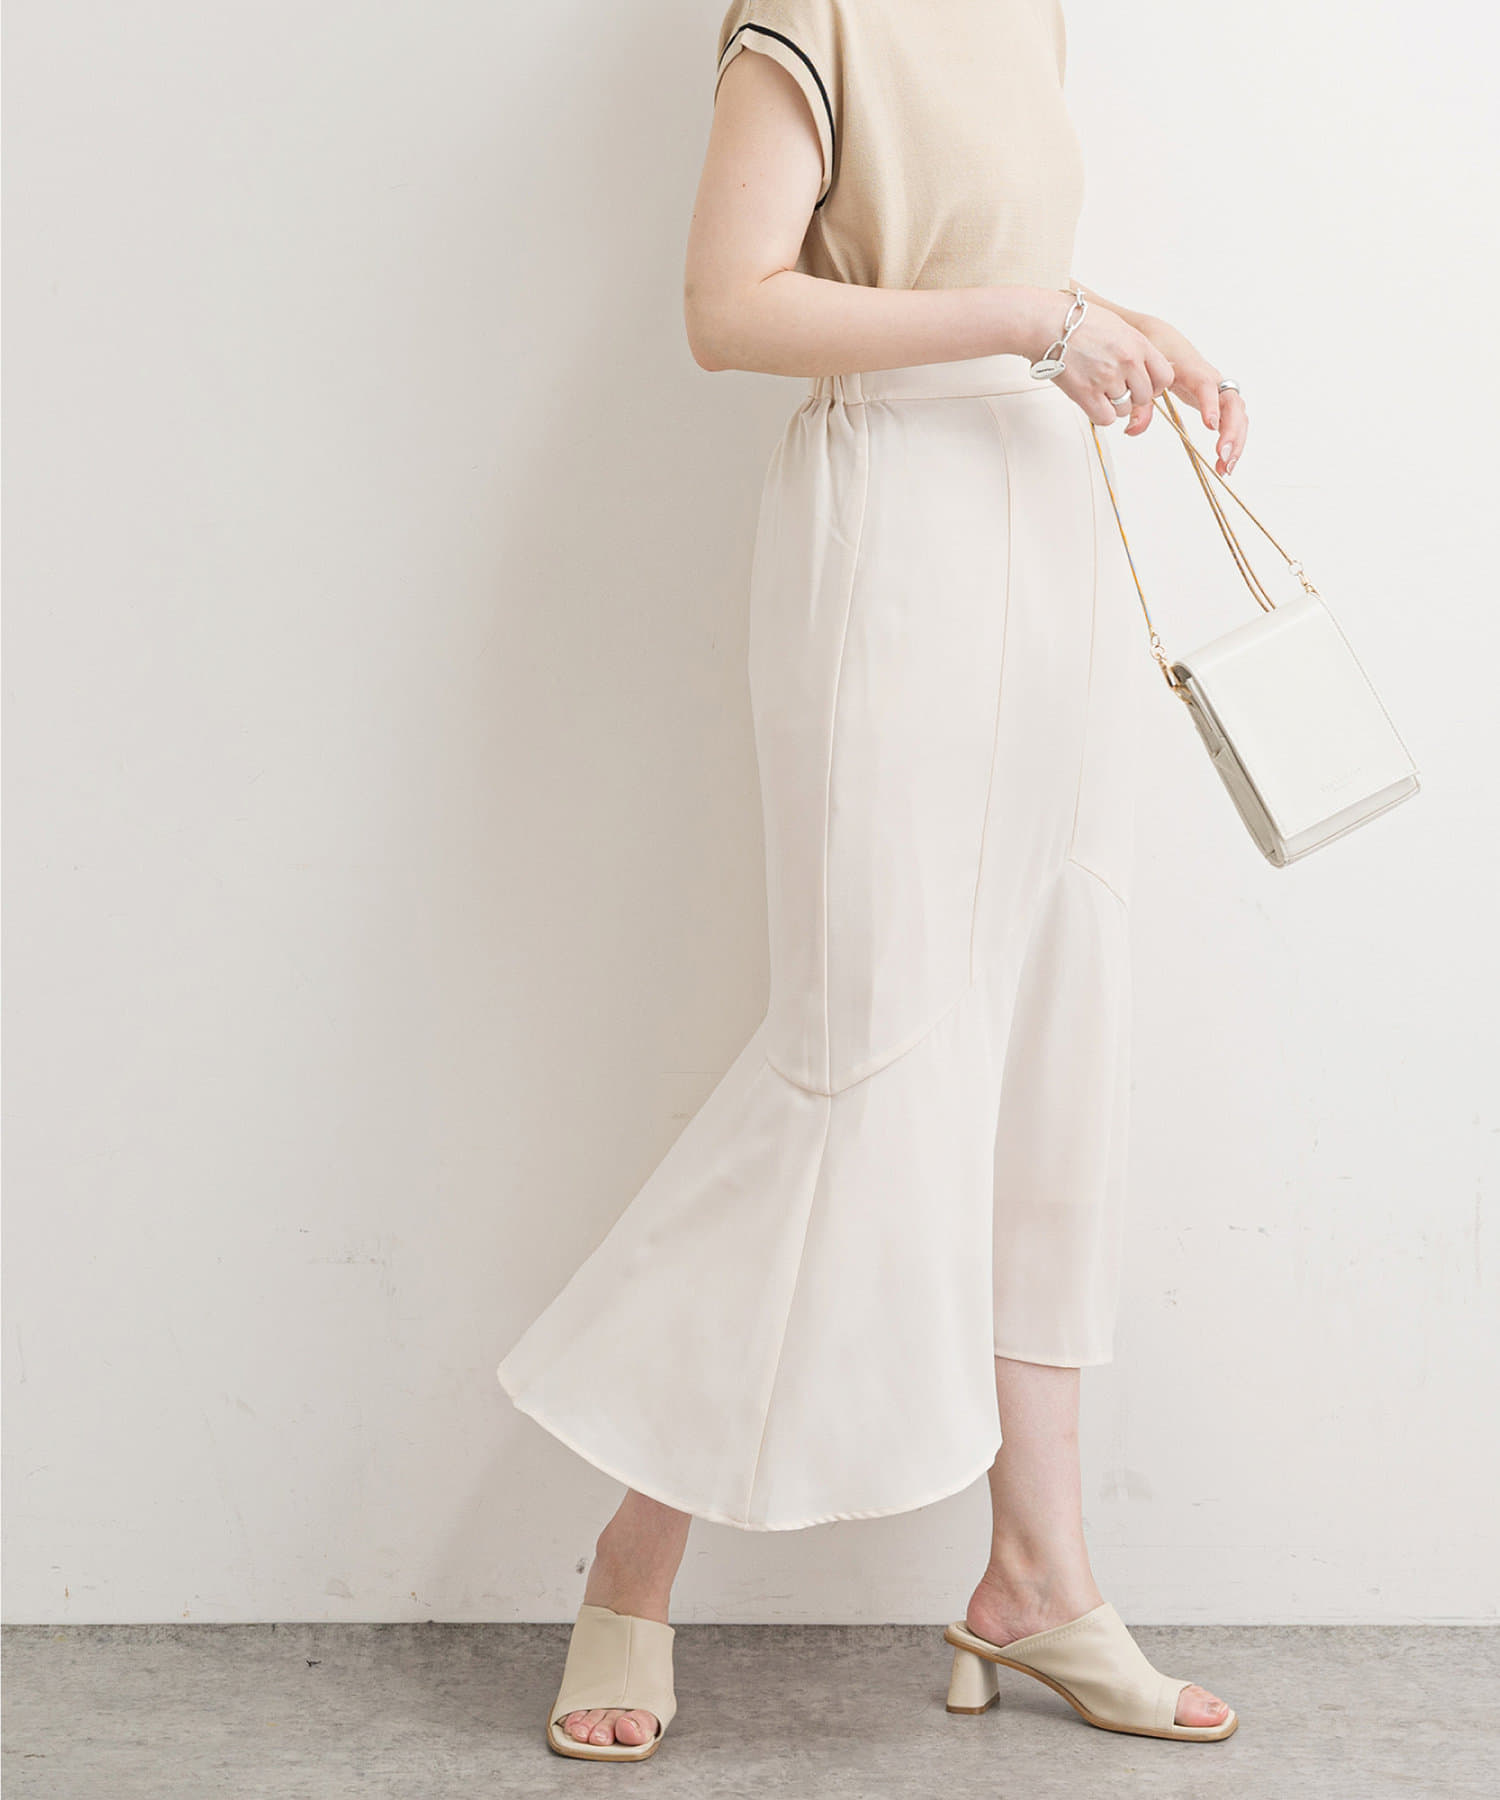 natural couture(ナチュラルクチュール) 【WEB限定】ハギデザインマーメイドスカート